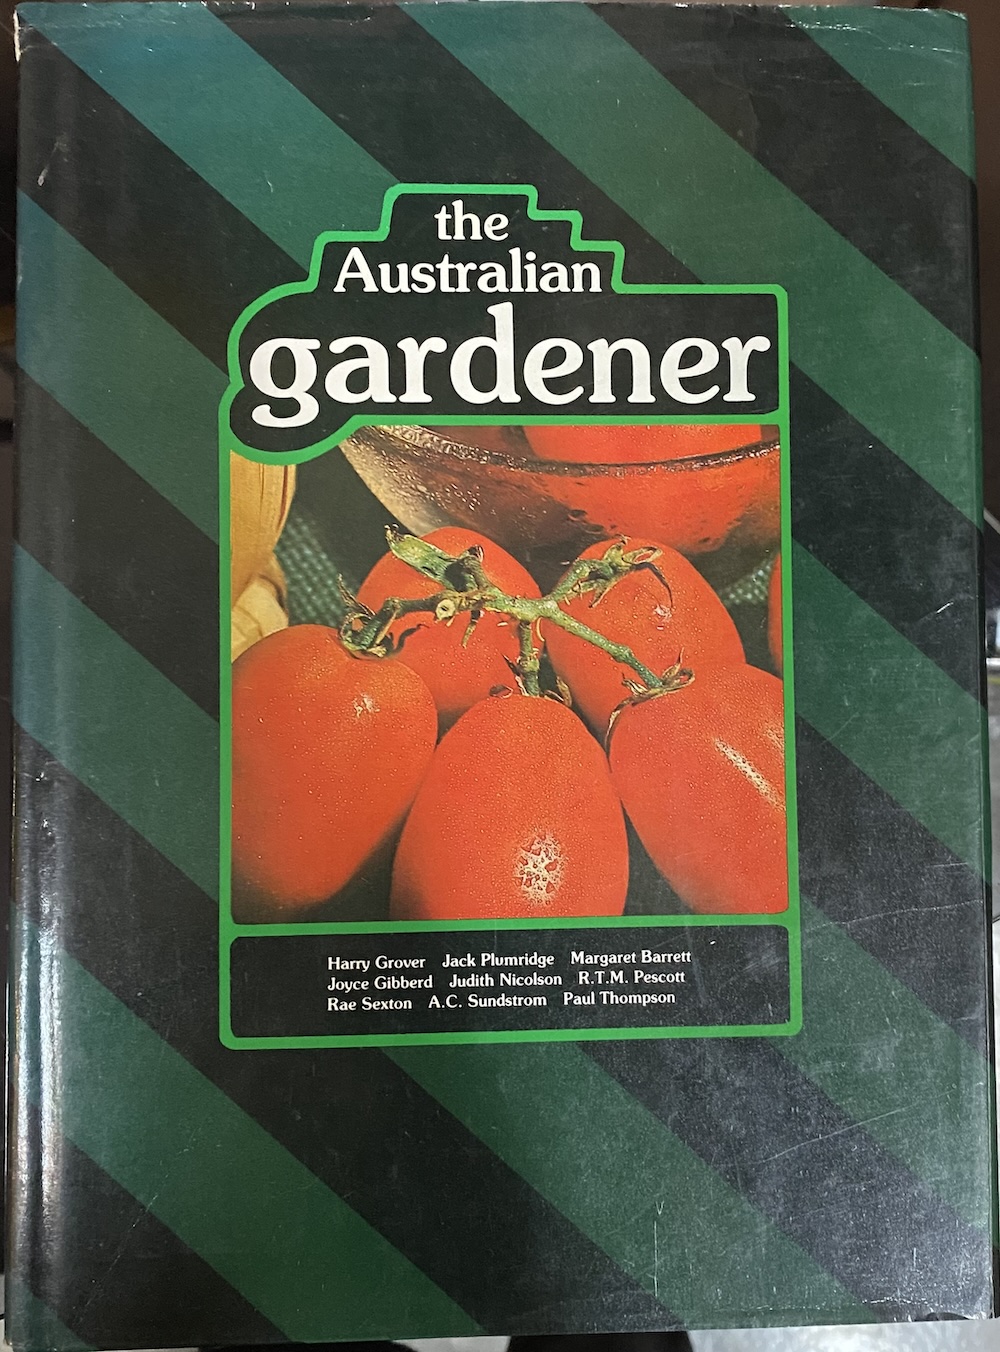 The Australian Gardener